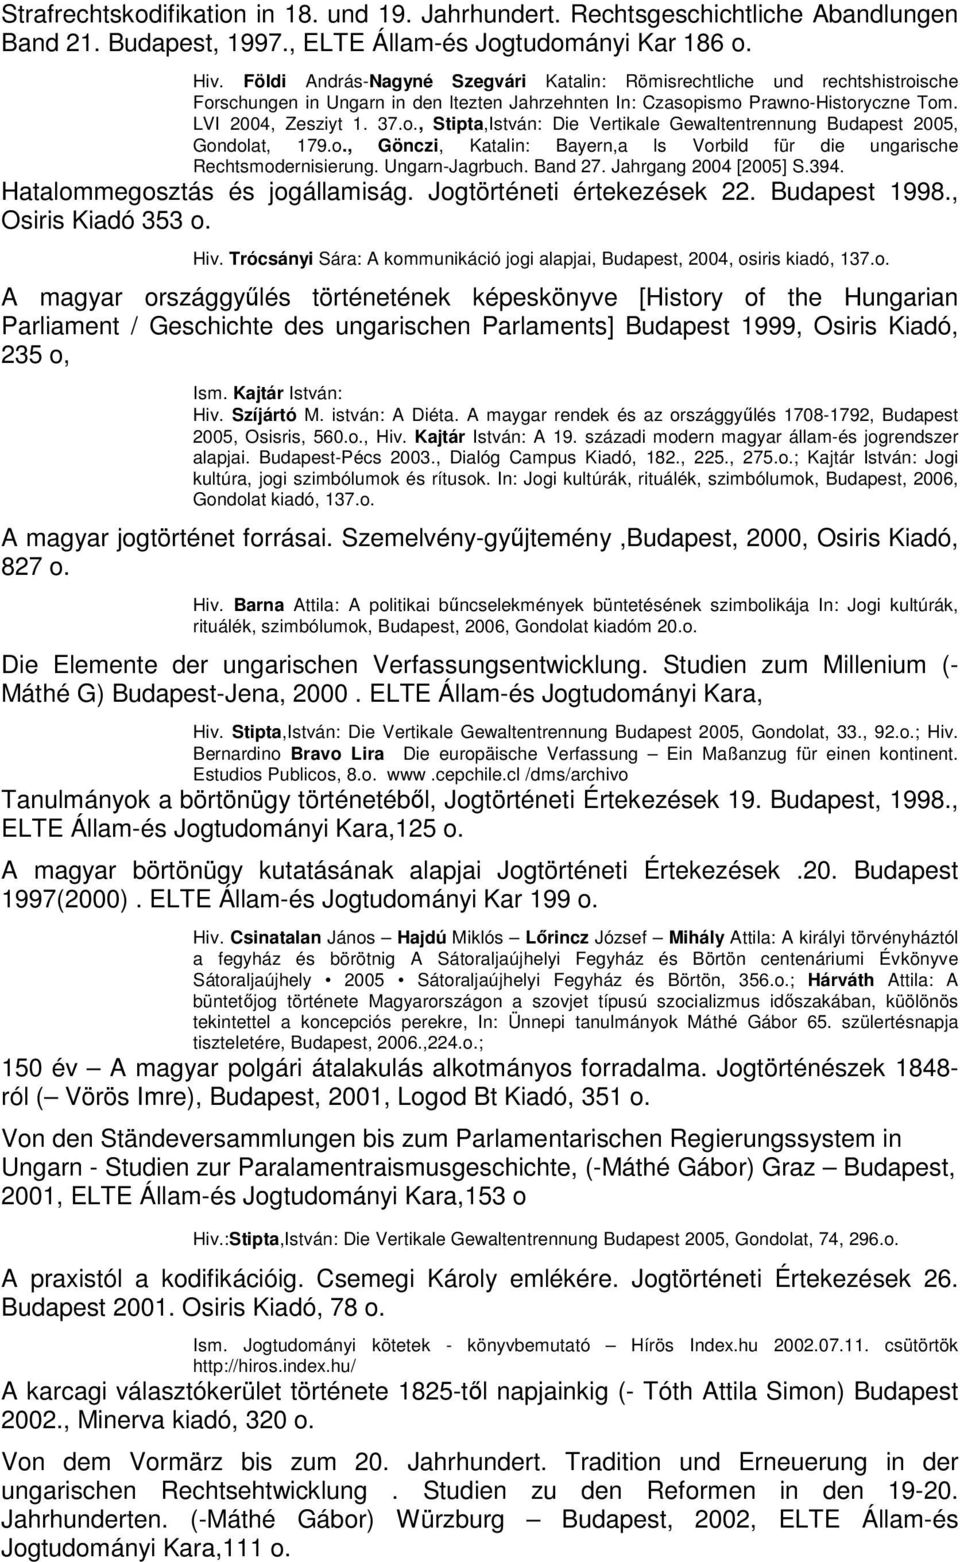 o., Gönczi, Katalin: Bayern,a ls Vorbild für die ungarische Rechtsmodernisierung. Ungarn-Jagrbuch. Band 27. Jahrgang 2004 [2005] S.394. Hatalommegosztás és jogállamiság. Jogtörténeti értekezések 22.